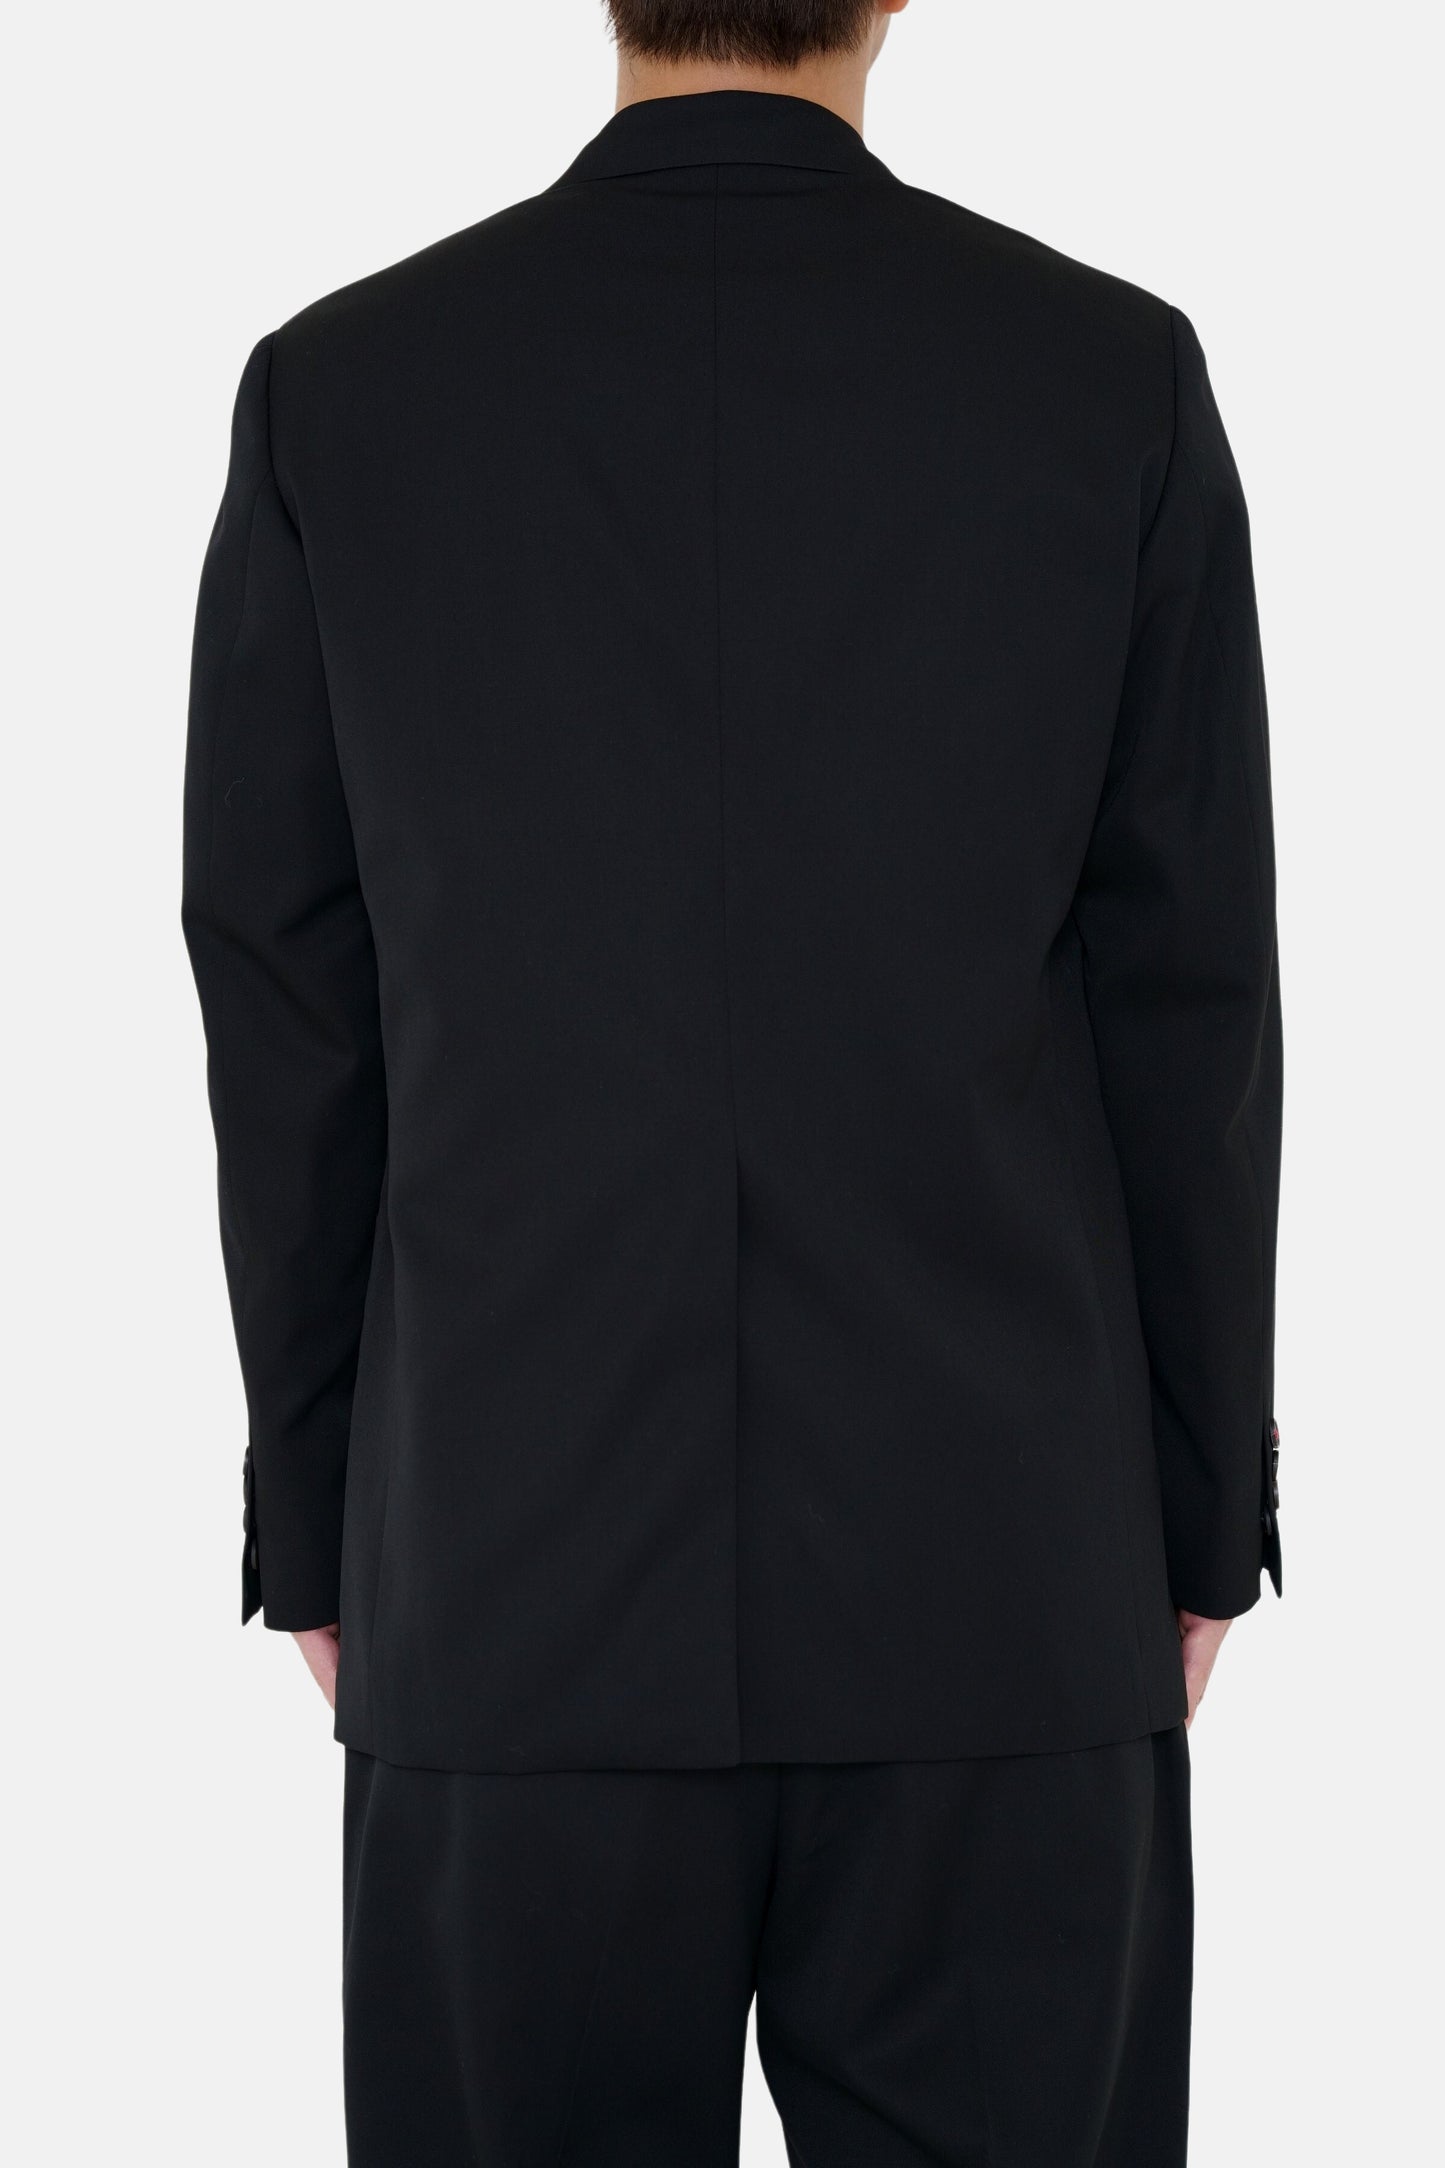 2B Single Tailored Jacket - Black